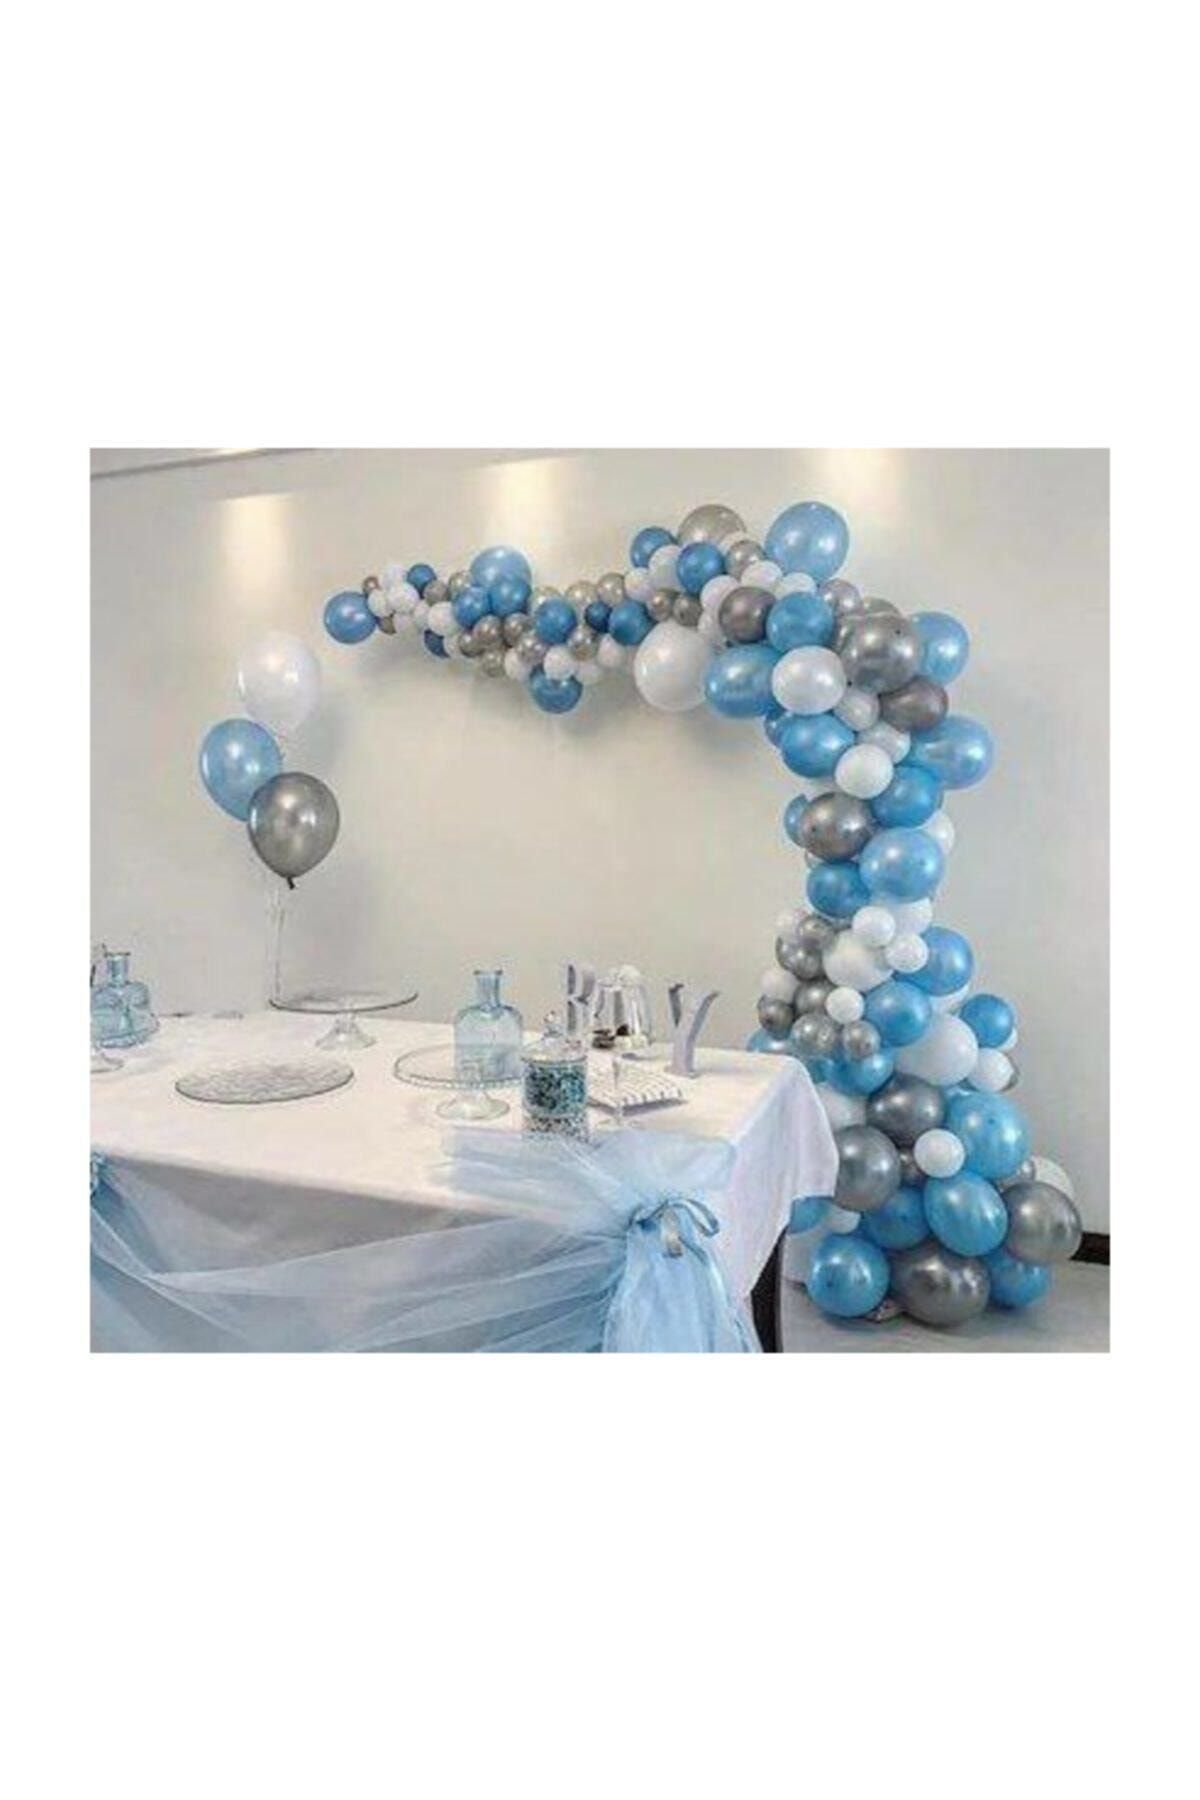 TATLI GÜNLER 100 Adet Metalik Balon Ve 5 Metre Balon Zinciri (mavi - Gümüş - Beyaz) Uçan Balon